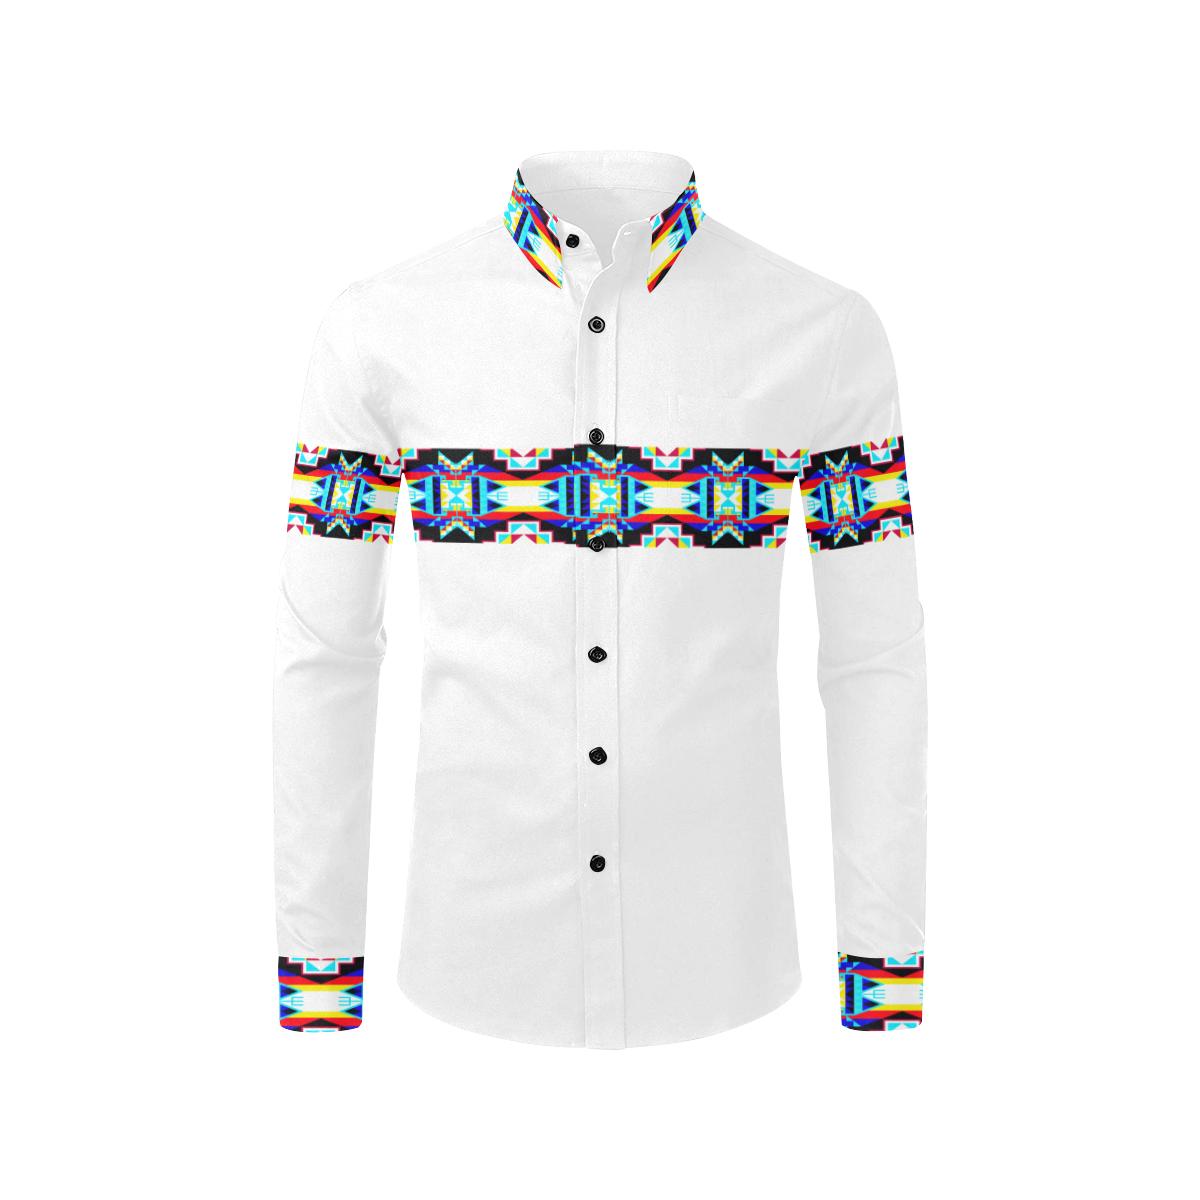 Banded Strip White-1 Men's All Over Print Casual Dress Shirt (Model T61) Men's Dress Shirt (T61) e-joyer 